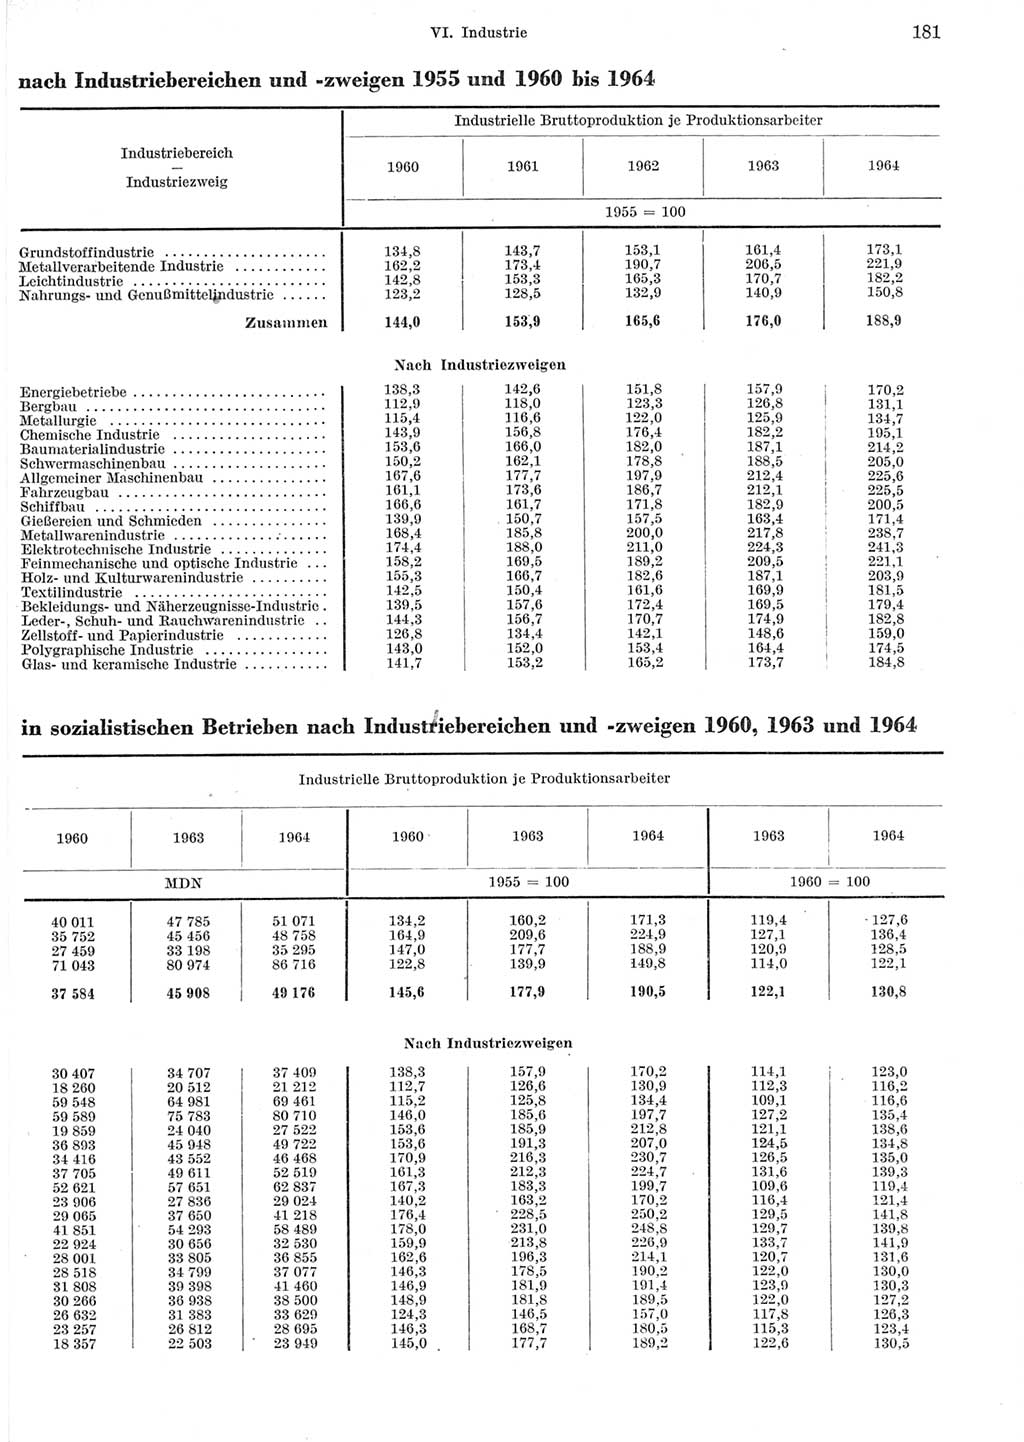 Statistisches Jahrbuch der Deutschen Demokratischen Republik (DDR) 1965, Seite 181 (Stat. Jb. DDR 1965, S. 181)